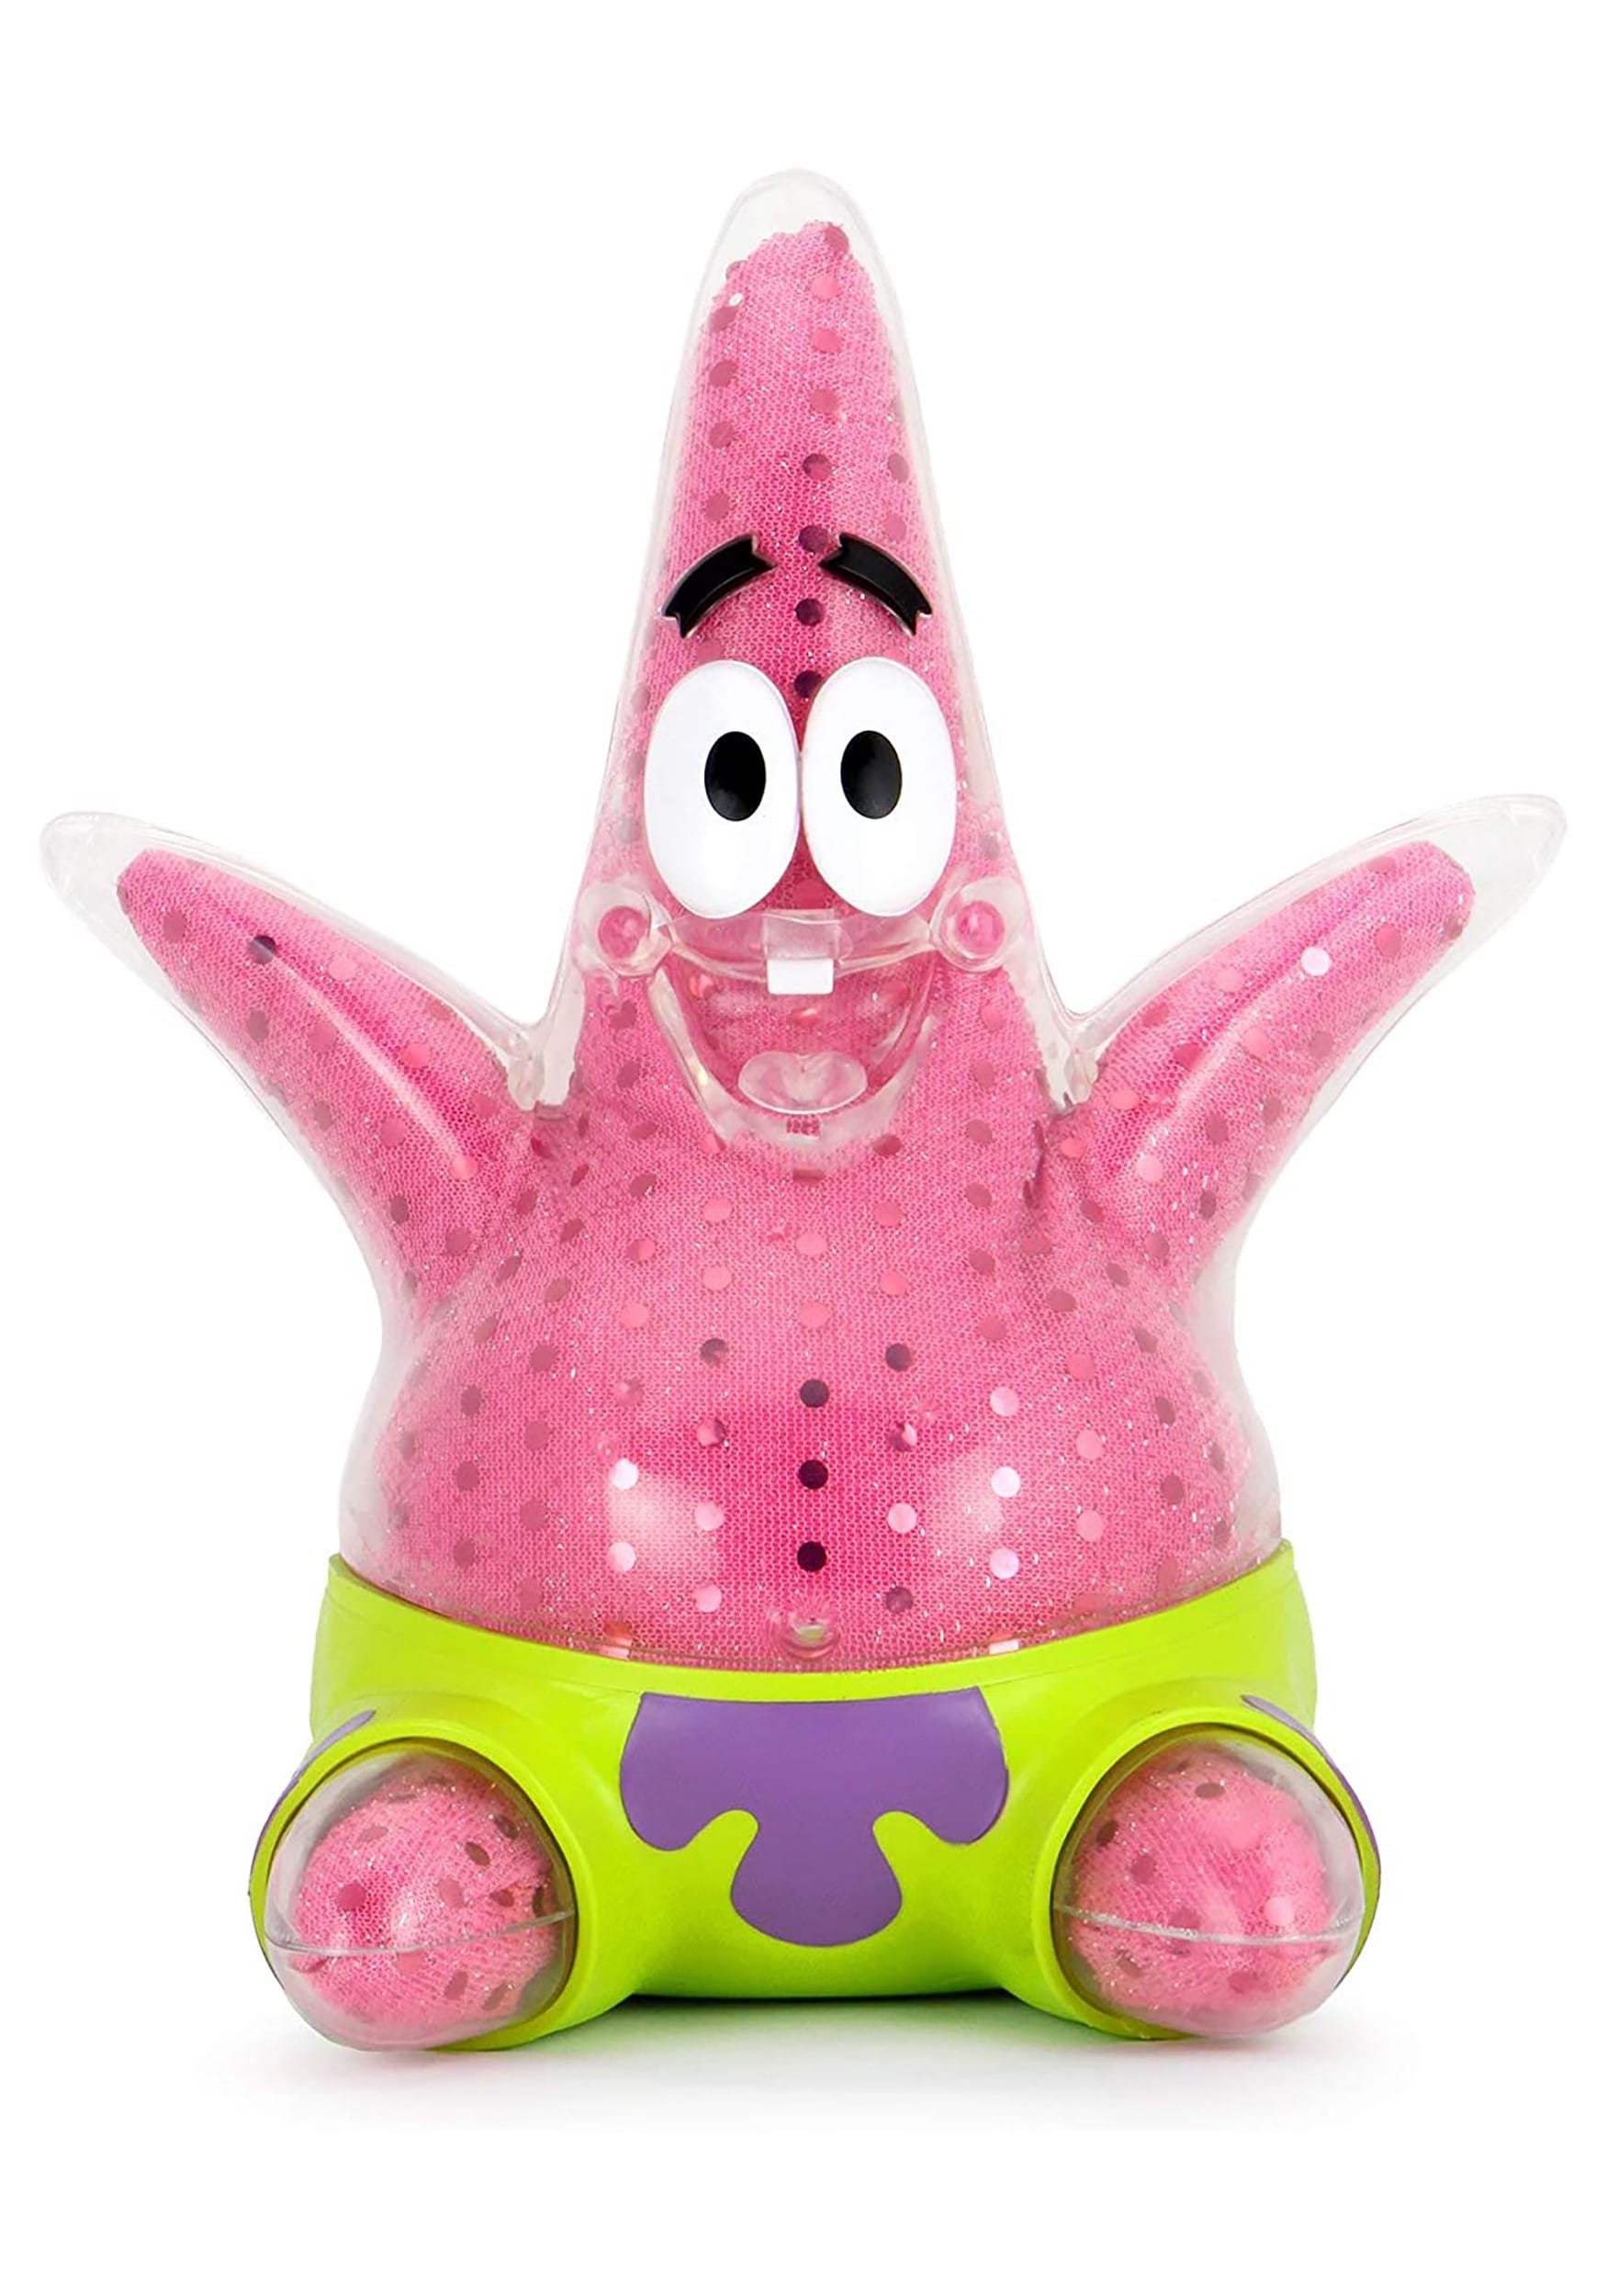 Nickelodeon Spongebob Squarepants: 8" Patrick Star Art Figure